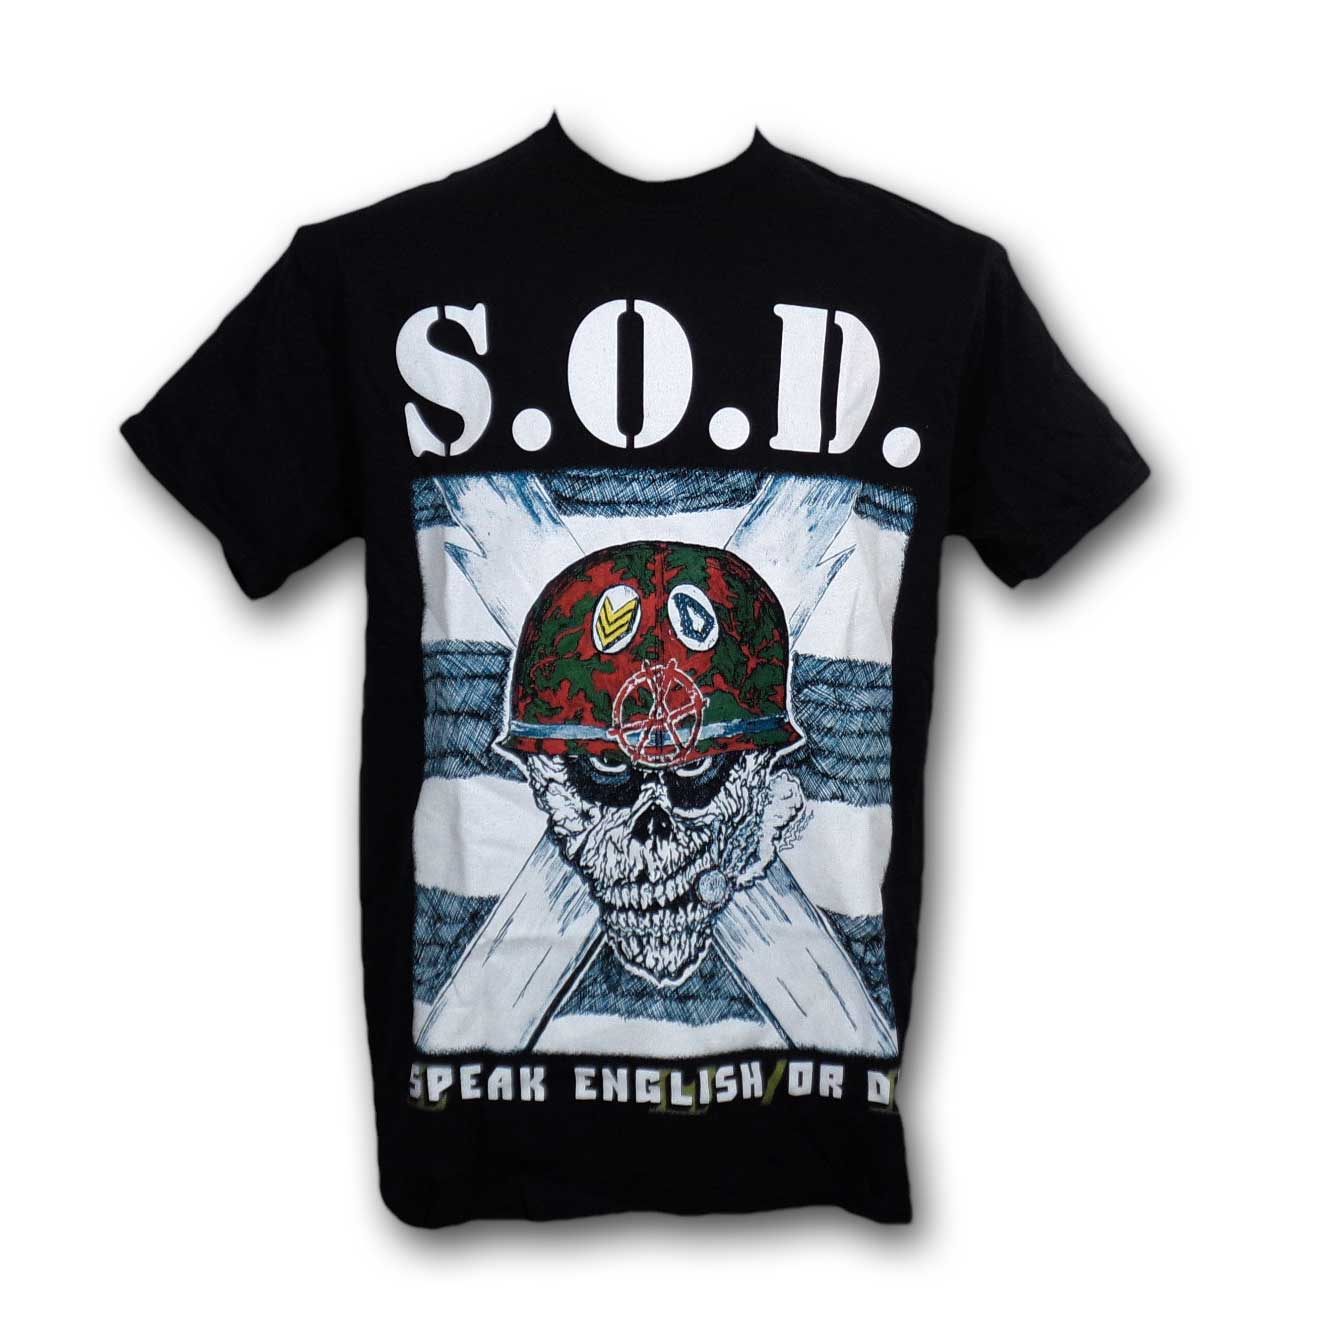 S.O.D. エスオーディー 90s tシャツ